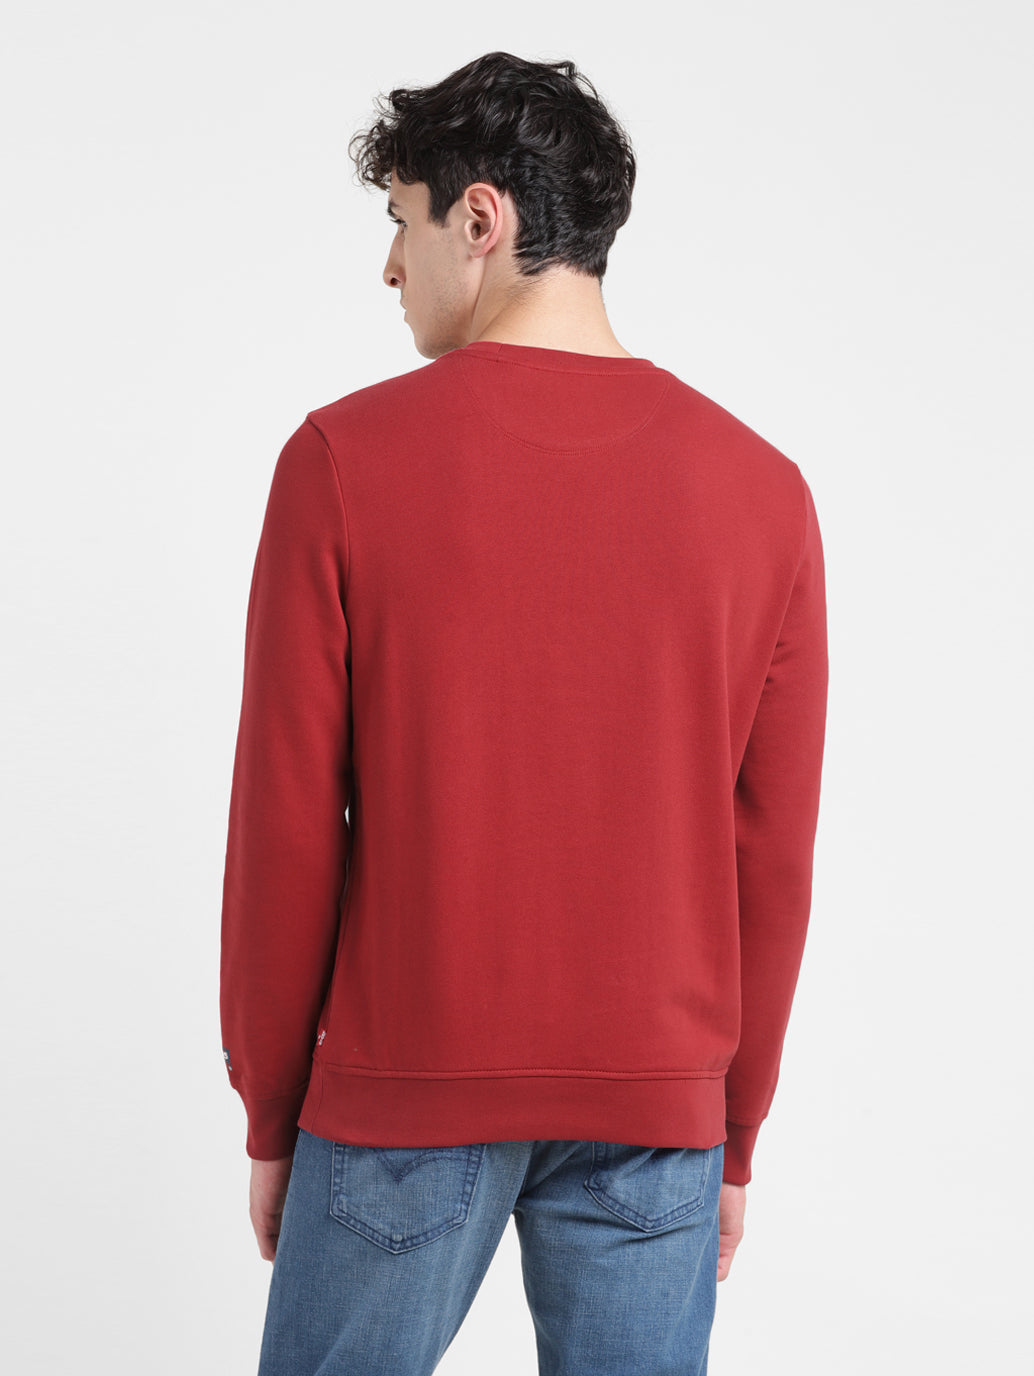 Men's Solid Red Crew Neck Sweatshirt